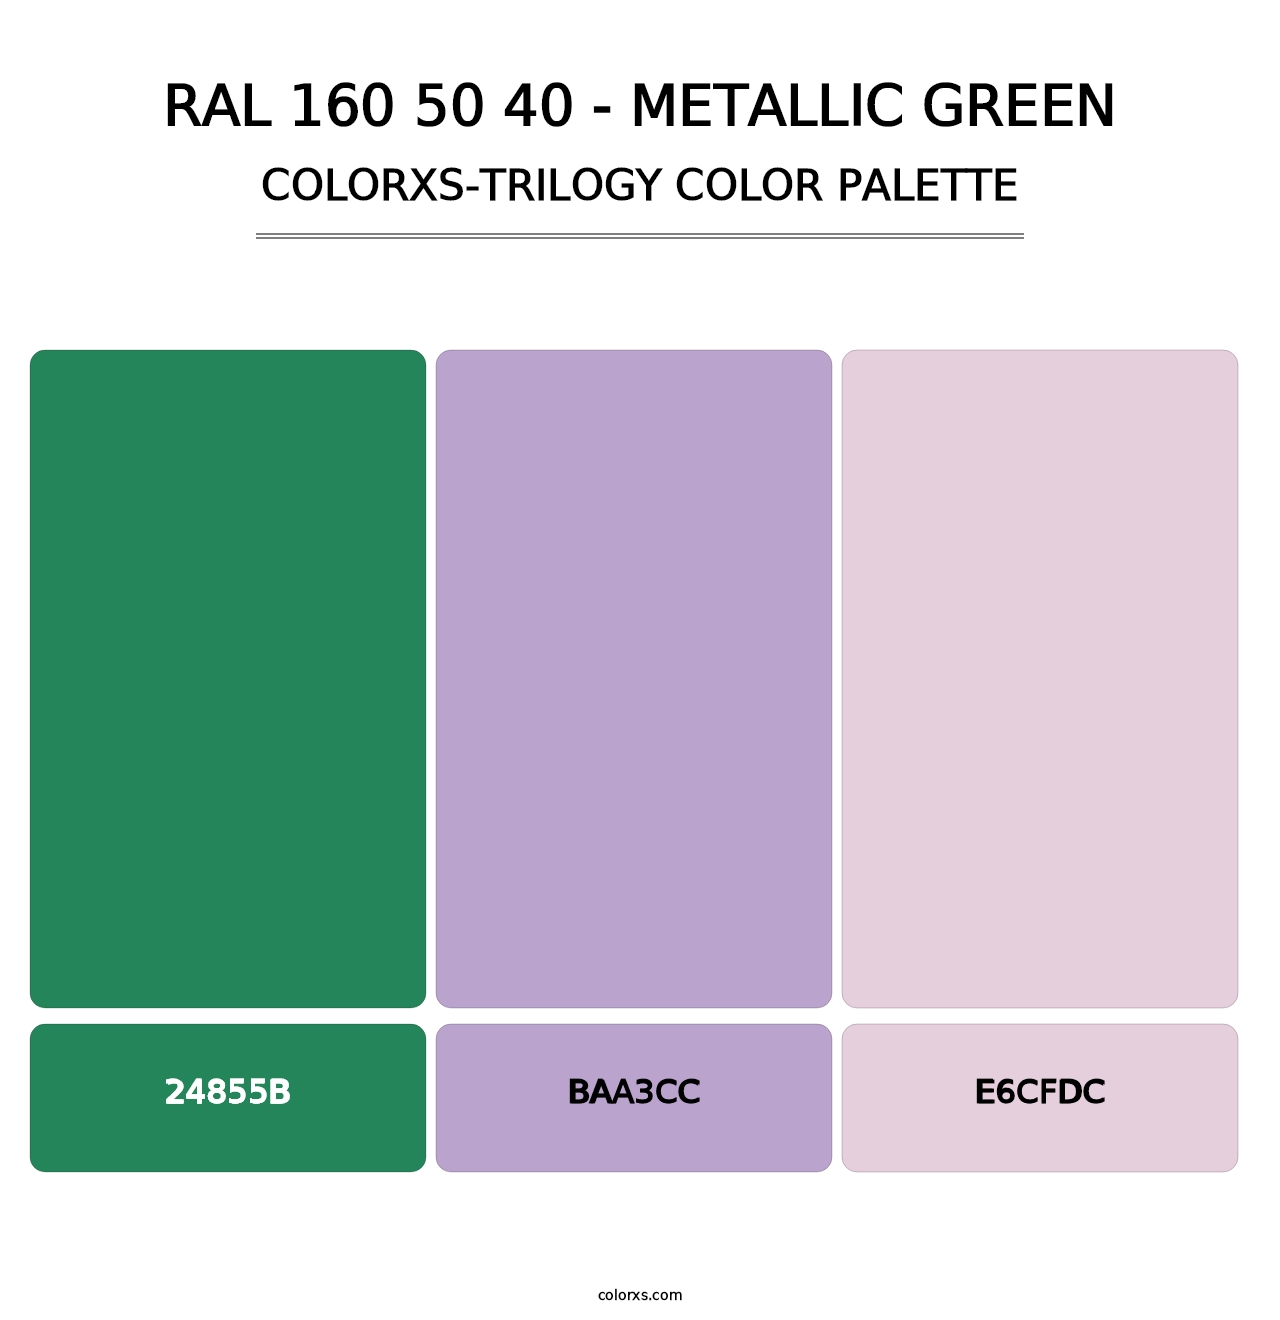 RAL 160 50 40 - Metallic Green - Colorxs Trilogy Palette